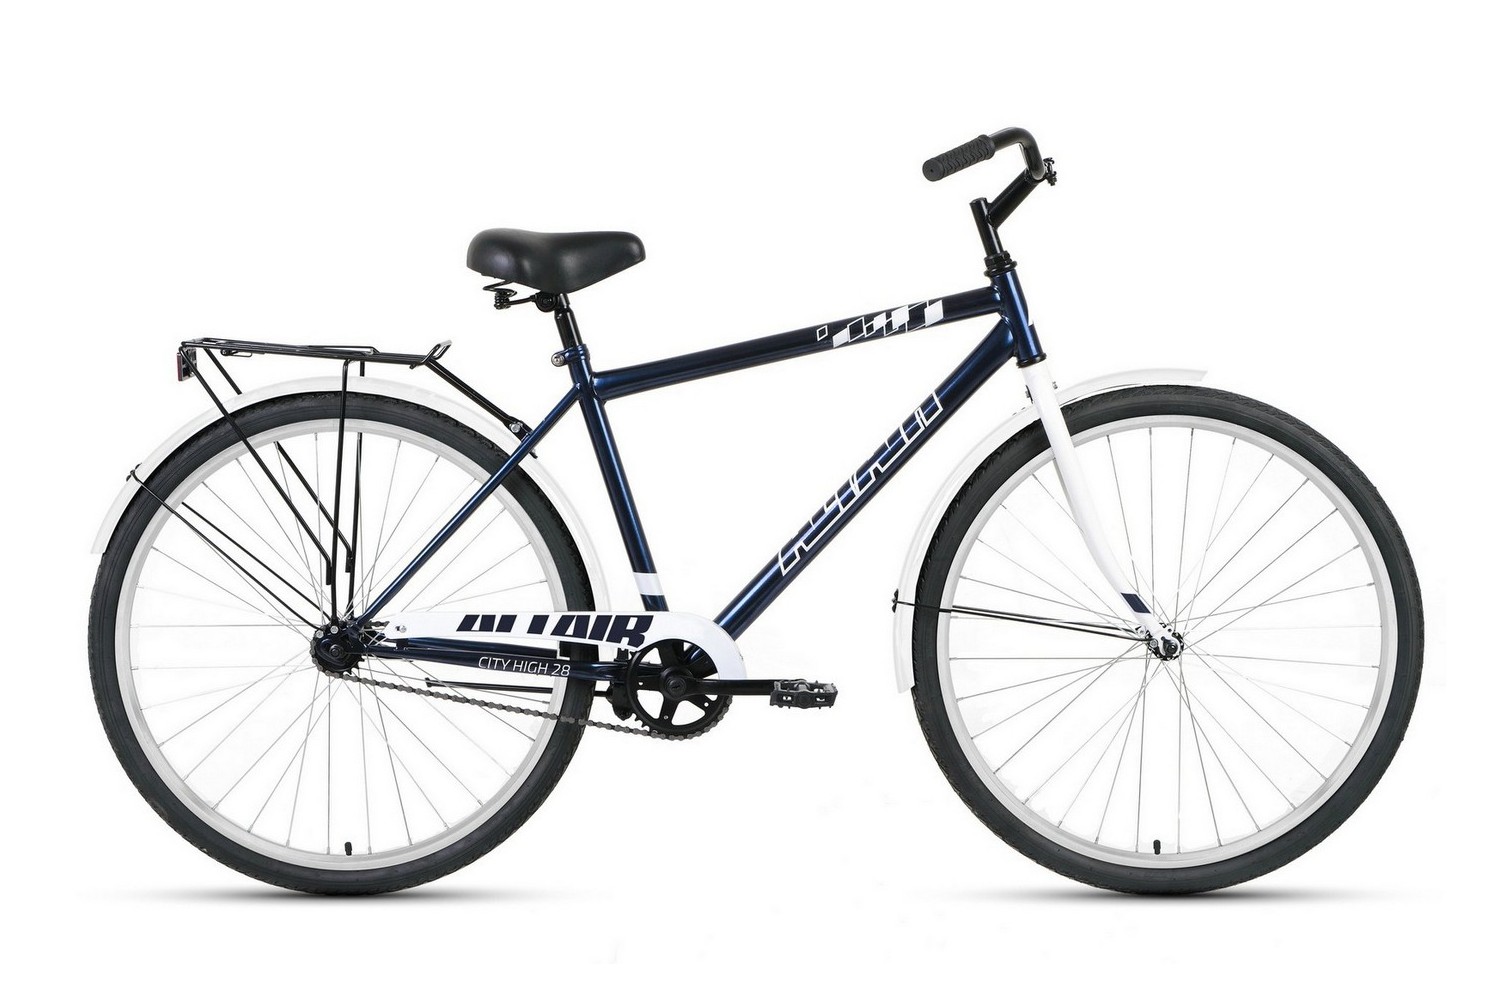 Дорожный велосипед Altair City 28 high, год 2022, цвет Синий-Серебристый, ростовка 19